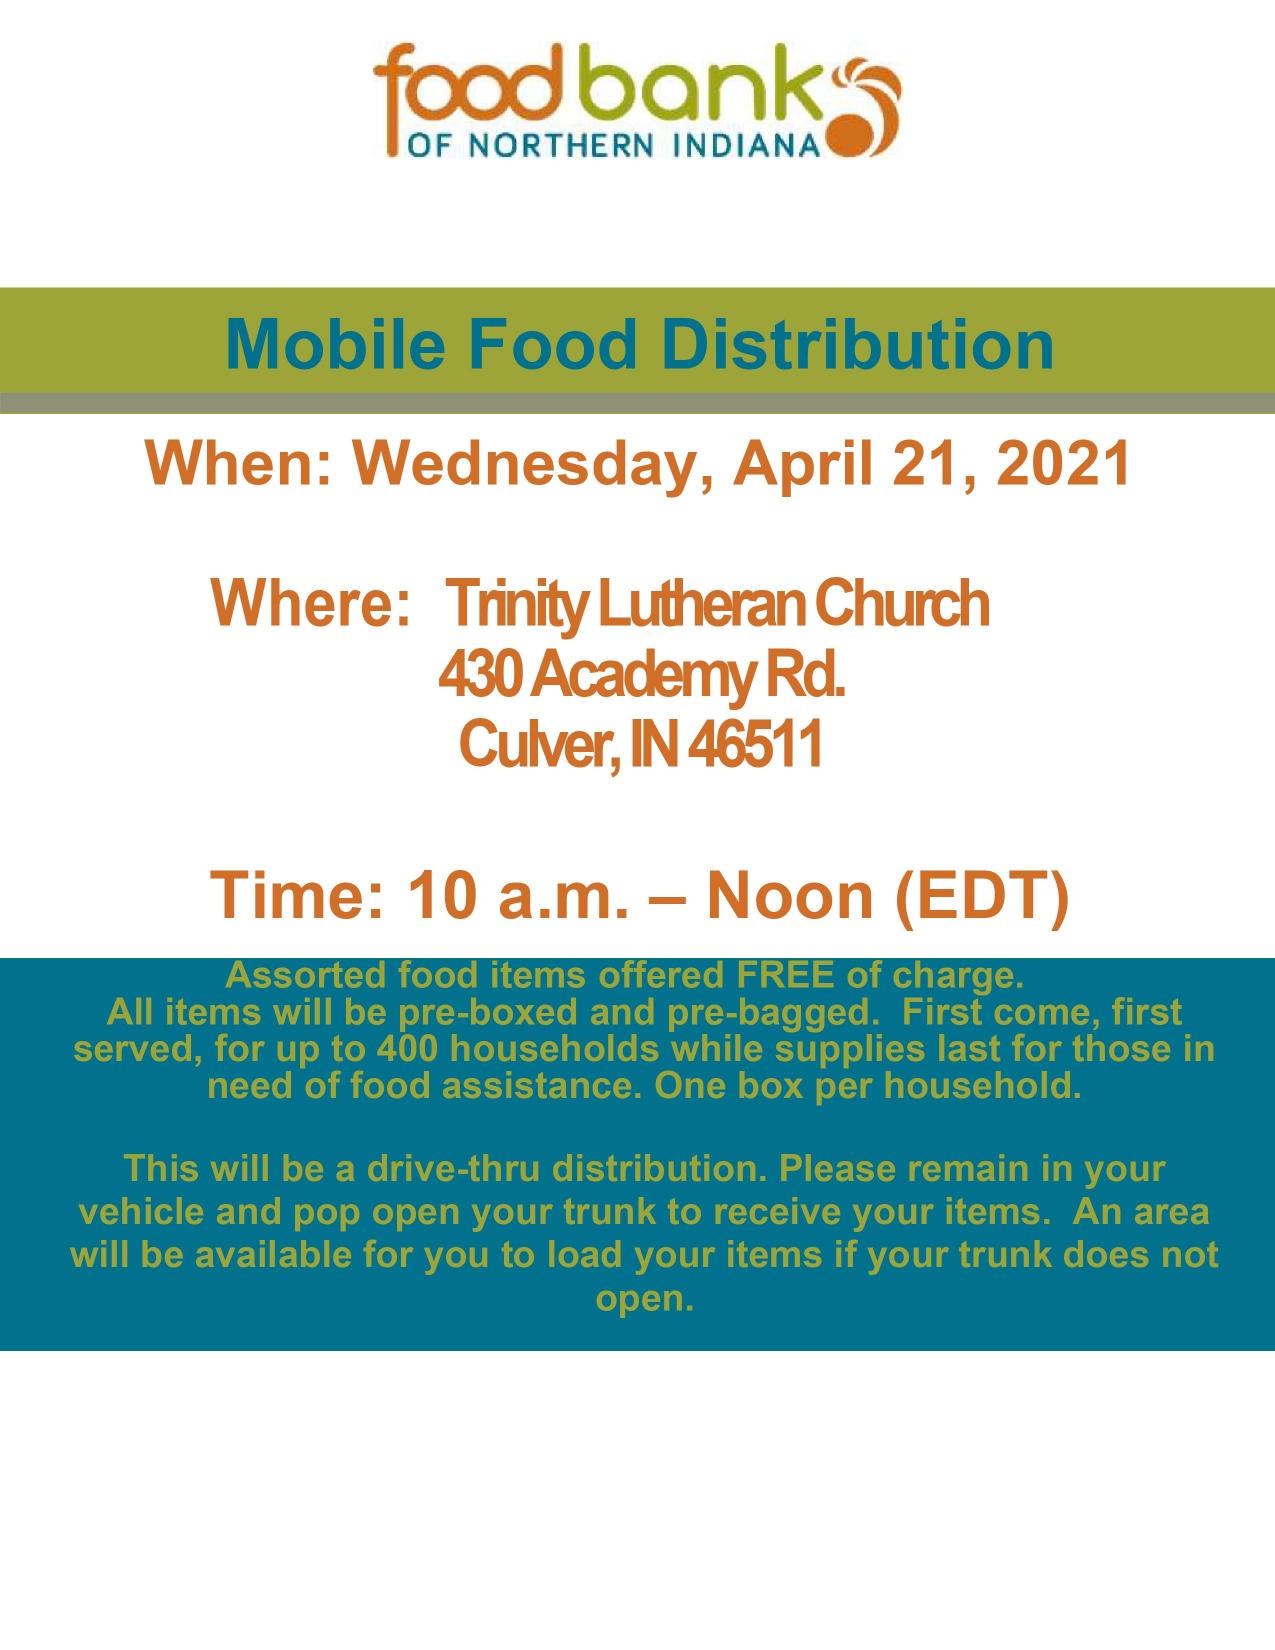 Mobile Food Distribution 4.21